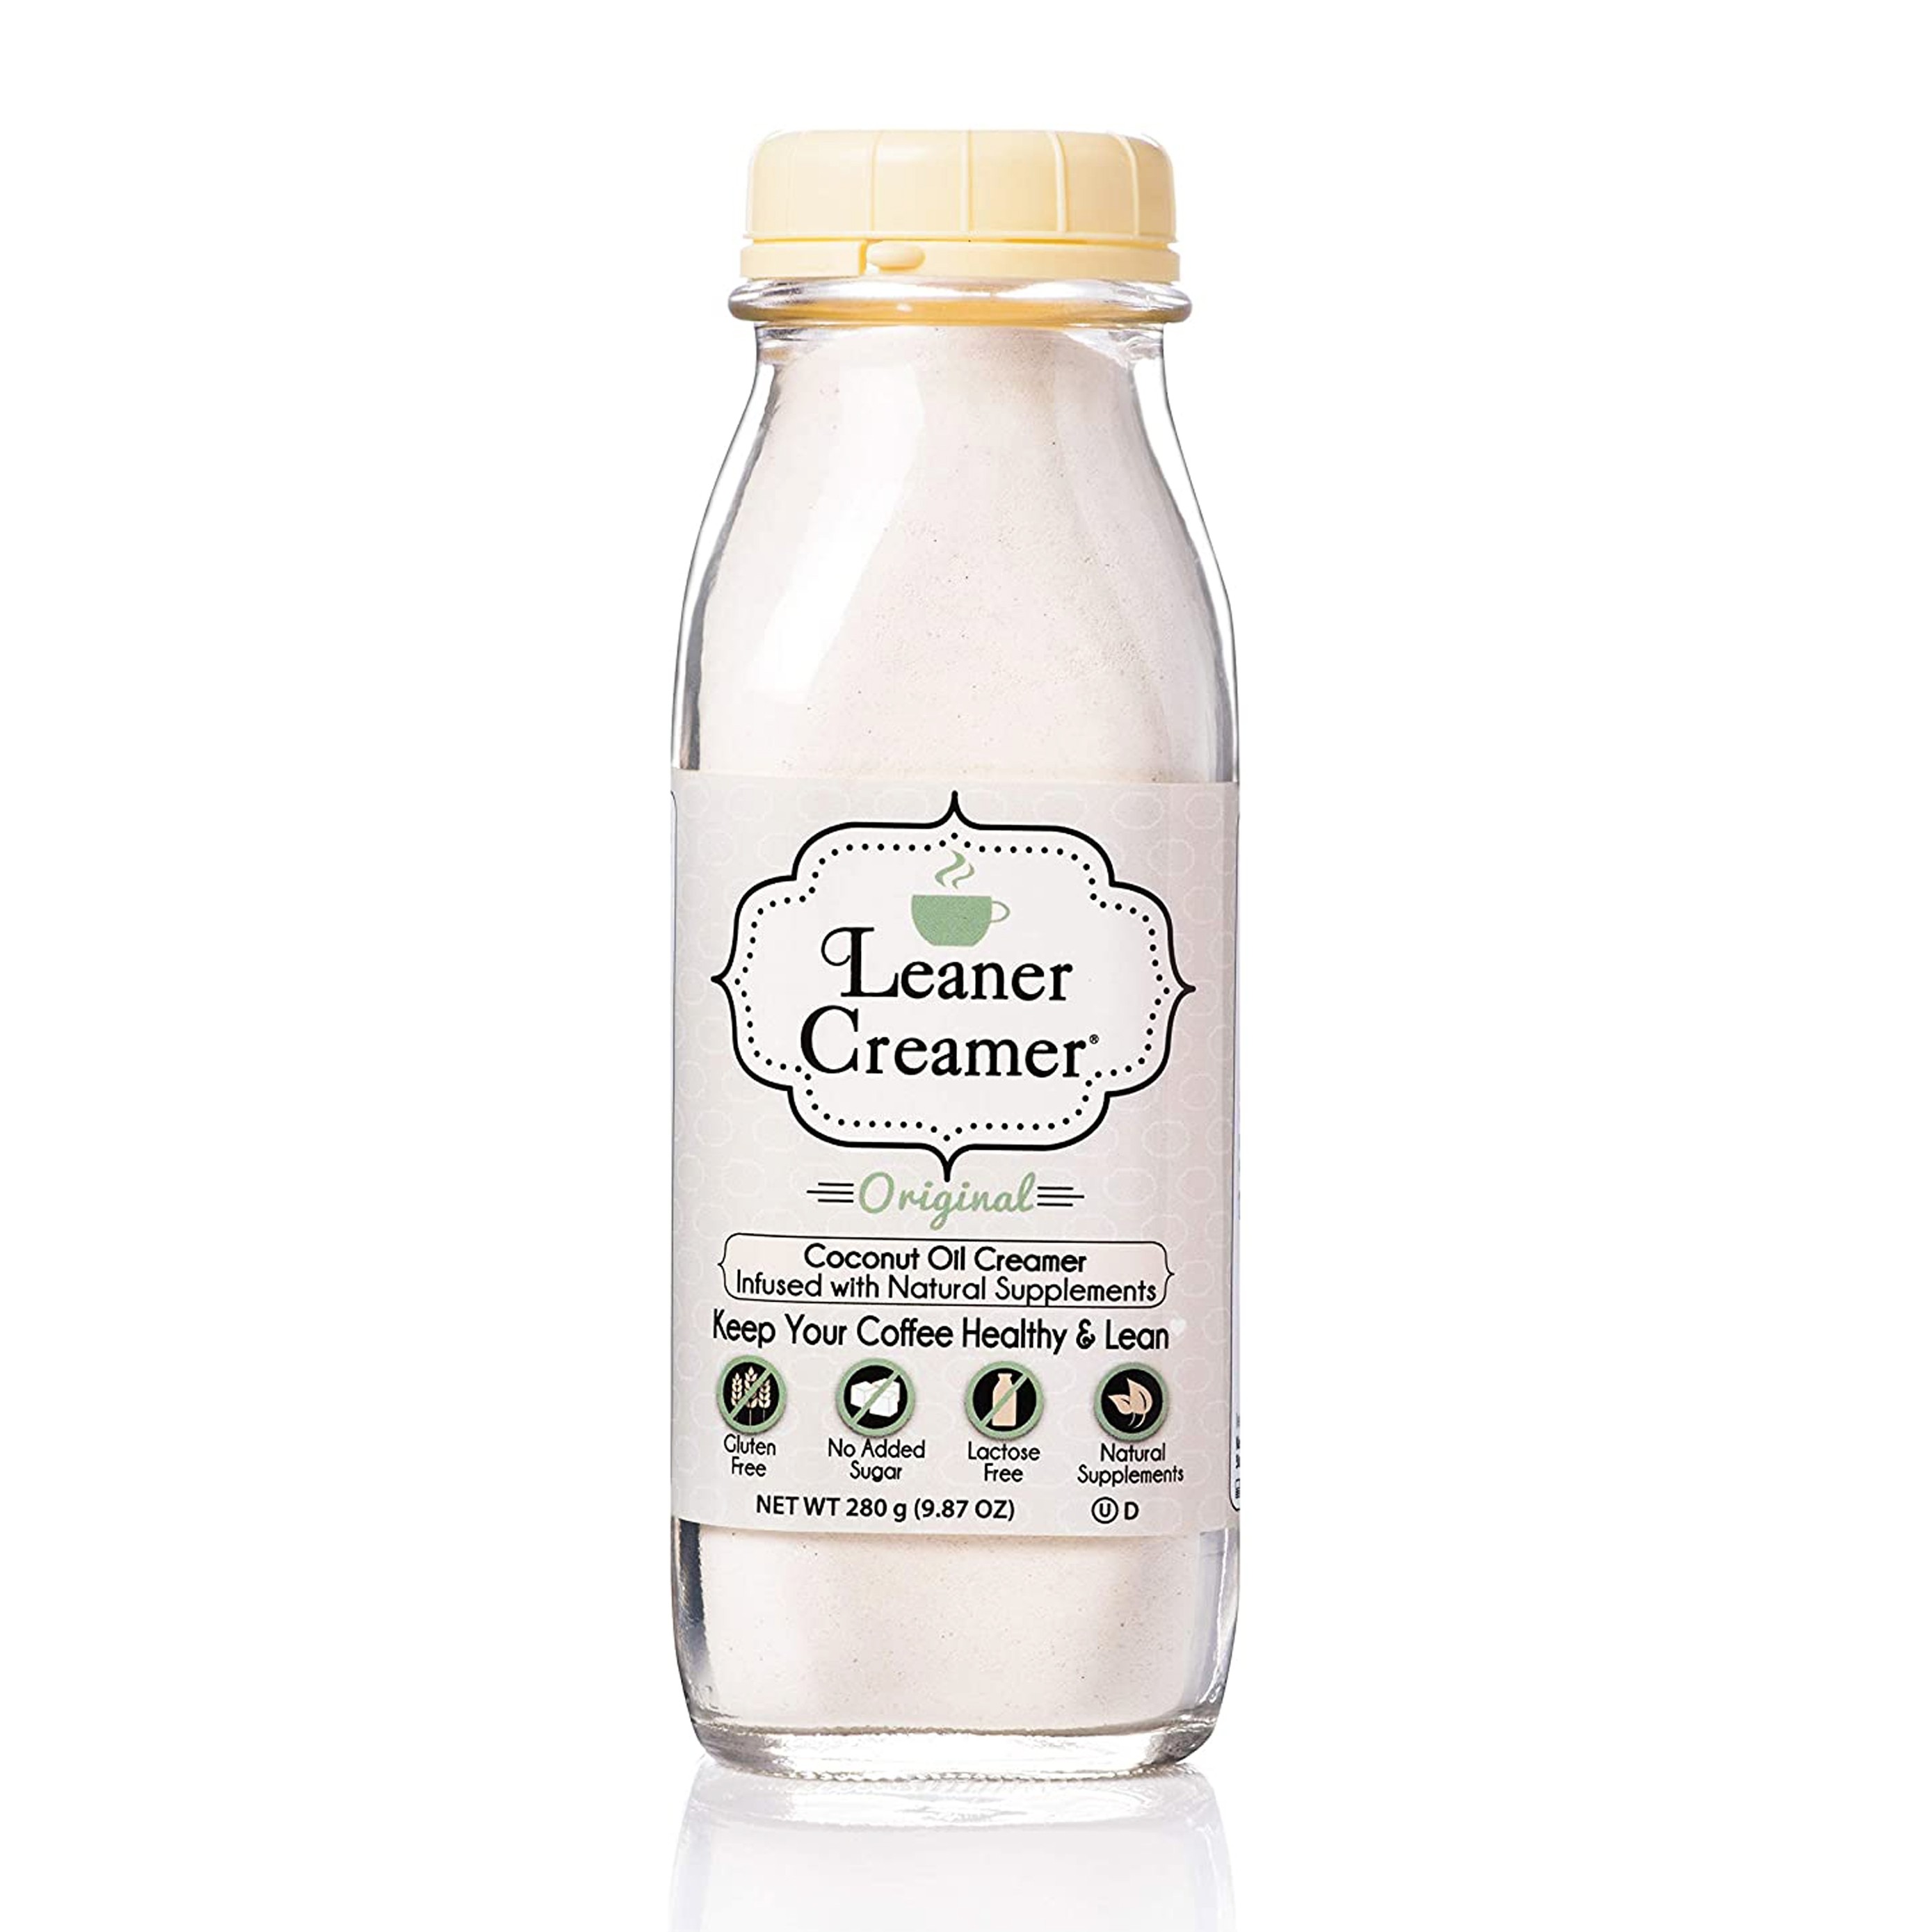 Leaner Creamer - 美國椰子油非乳咖啡素奶粉 ORIGINAL COCONUT OIL CREAMER